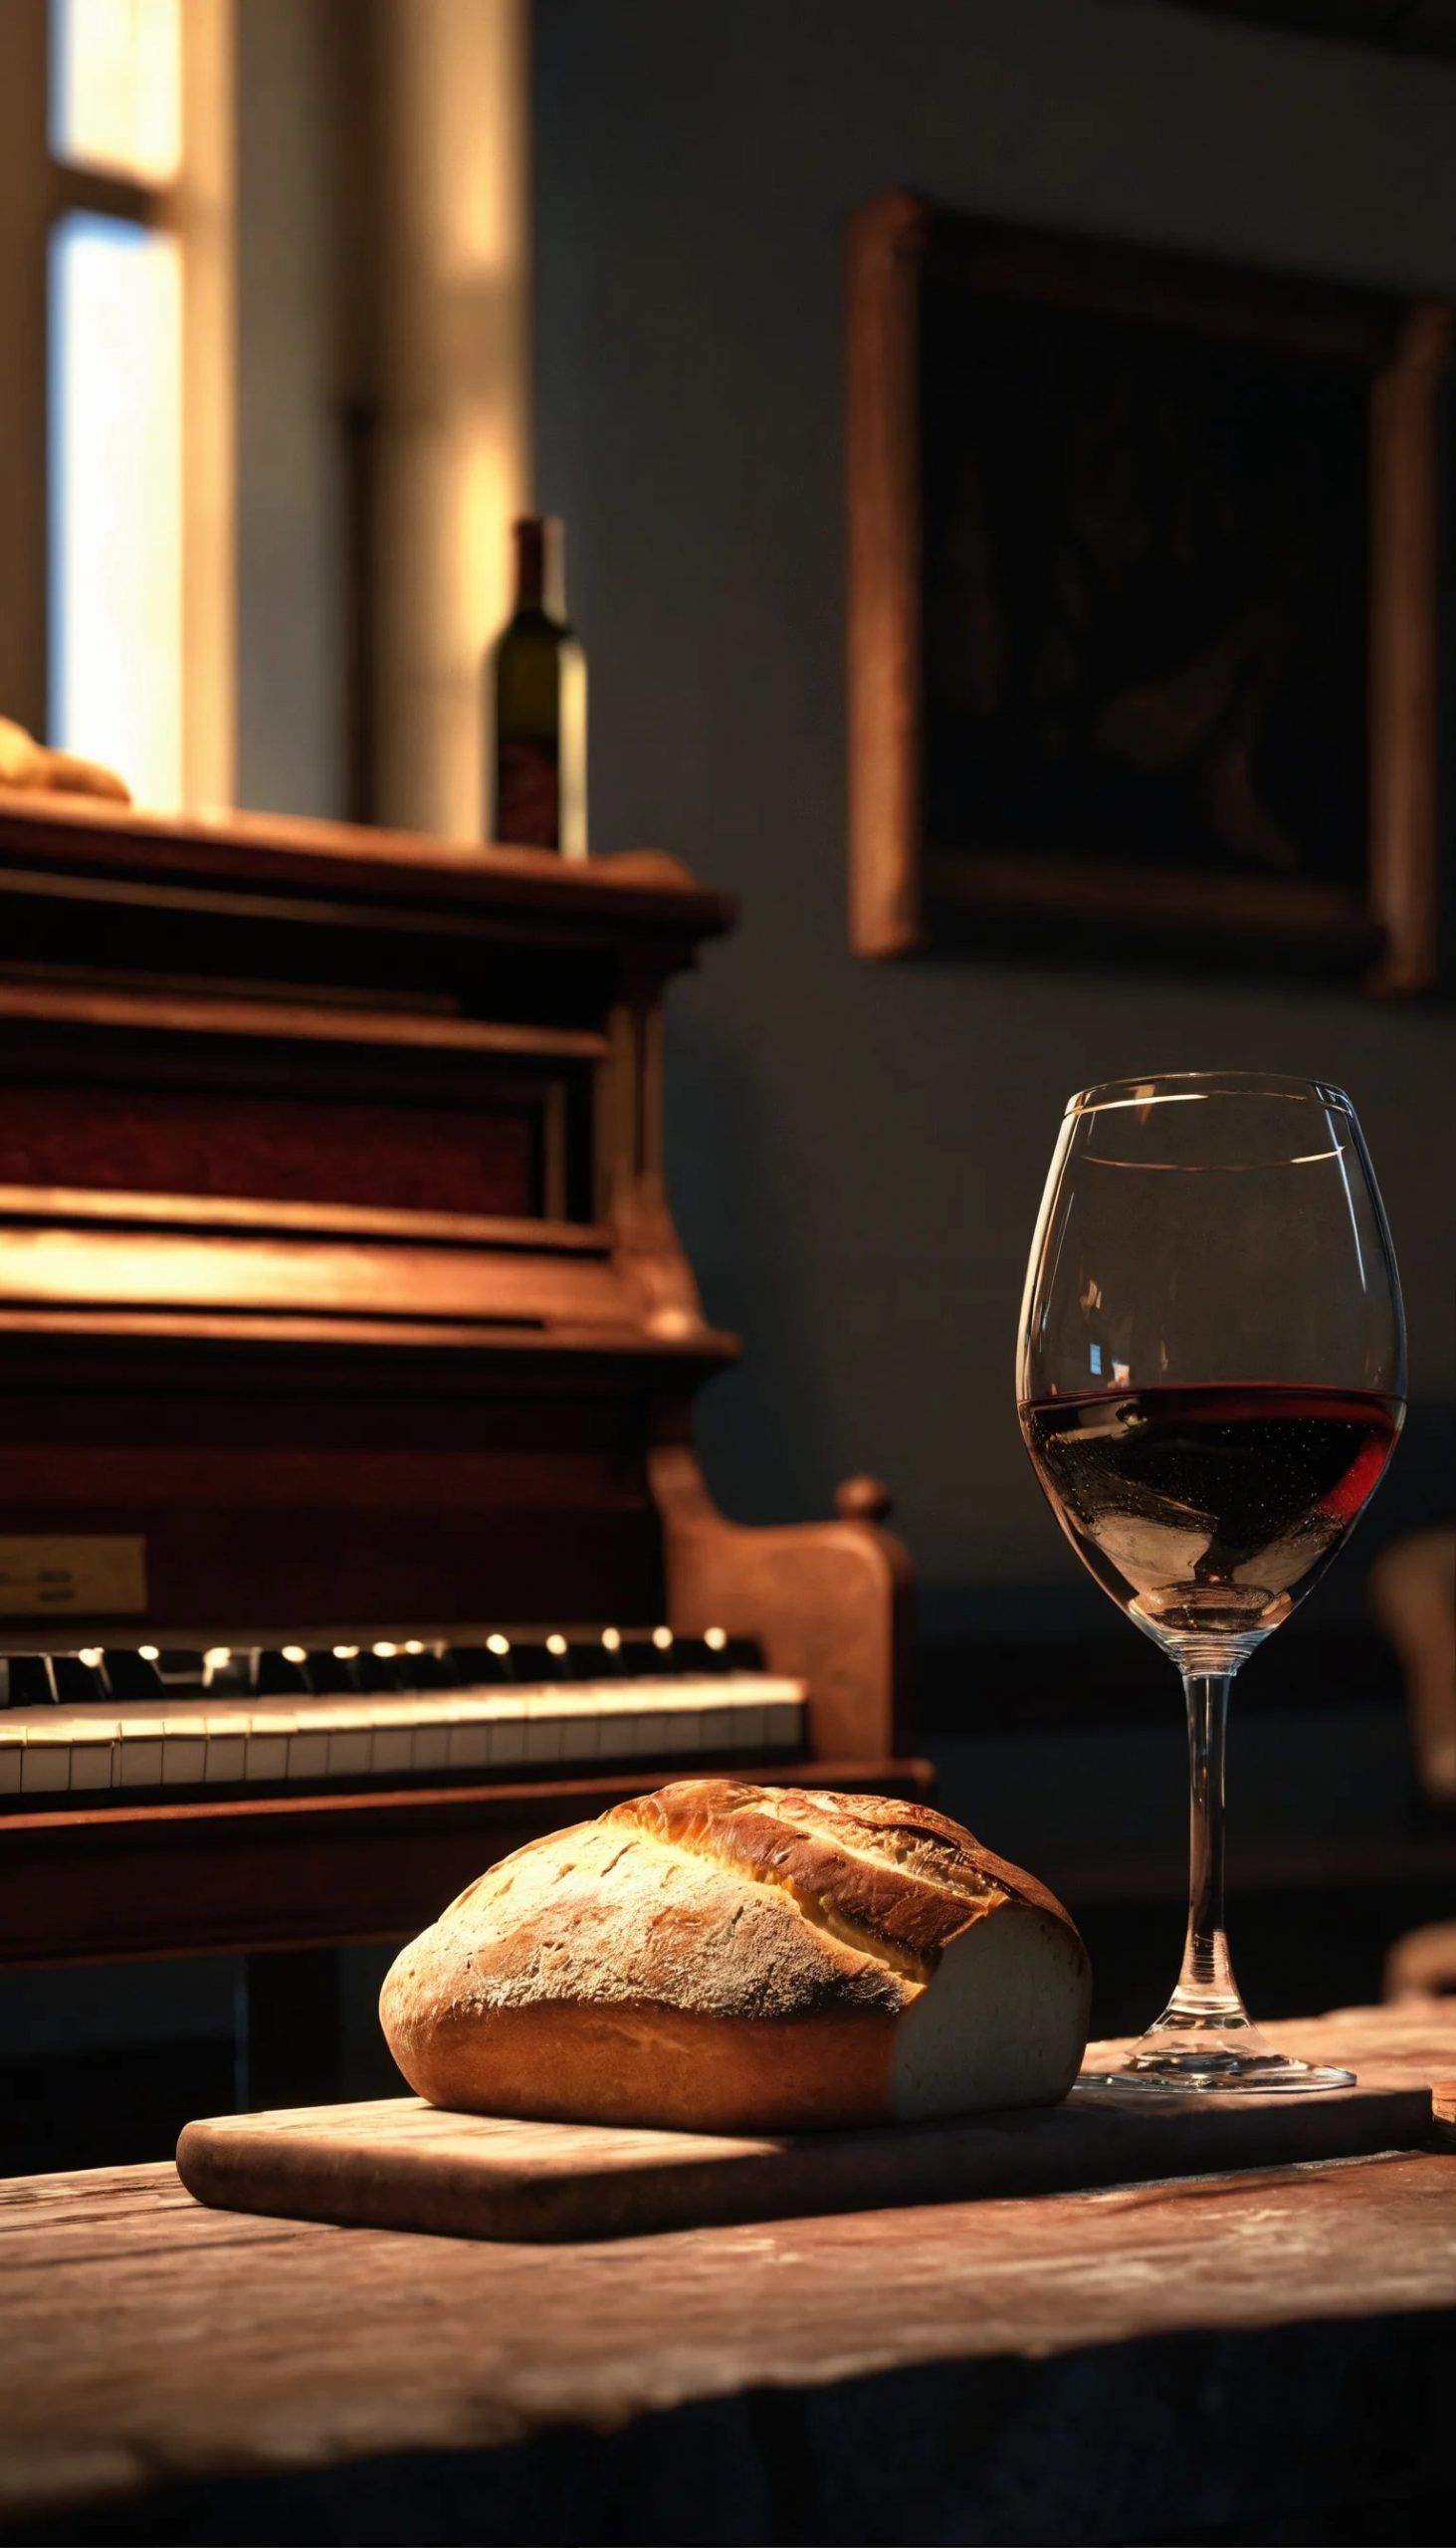 Weinglas-und-Brot-vor-eine-Orgel